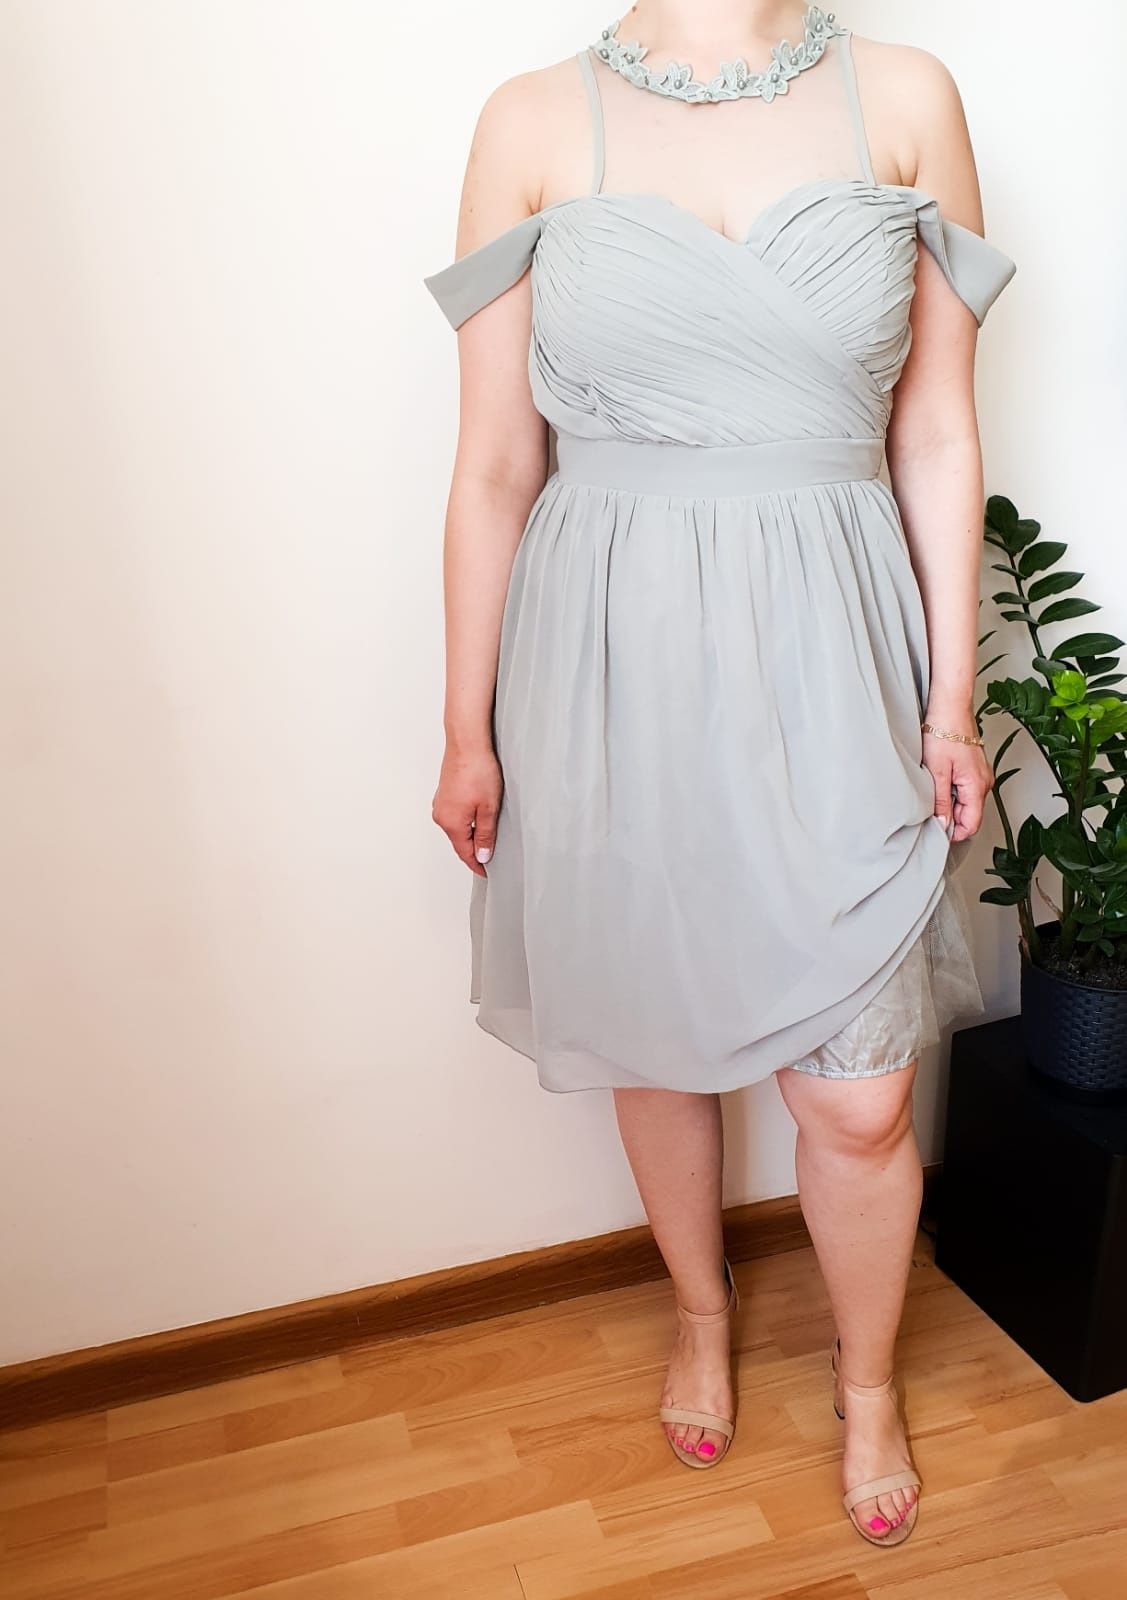 Piękna szałwiowa sukienka 42/XL wesele chrzciny